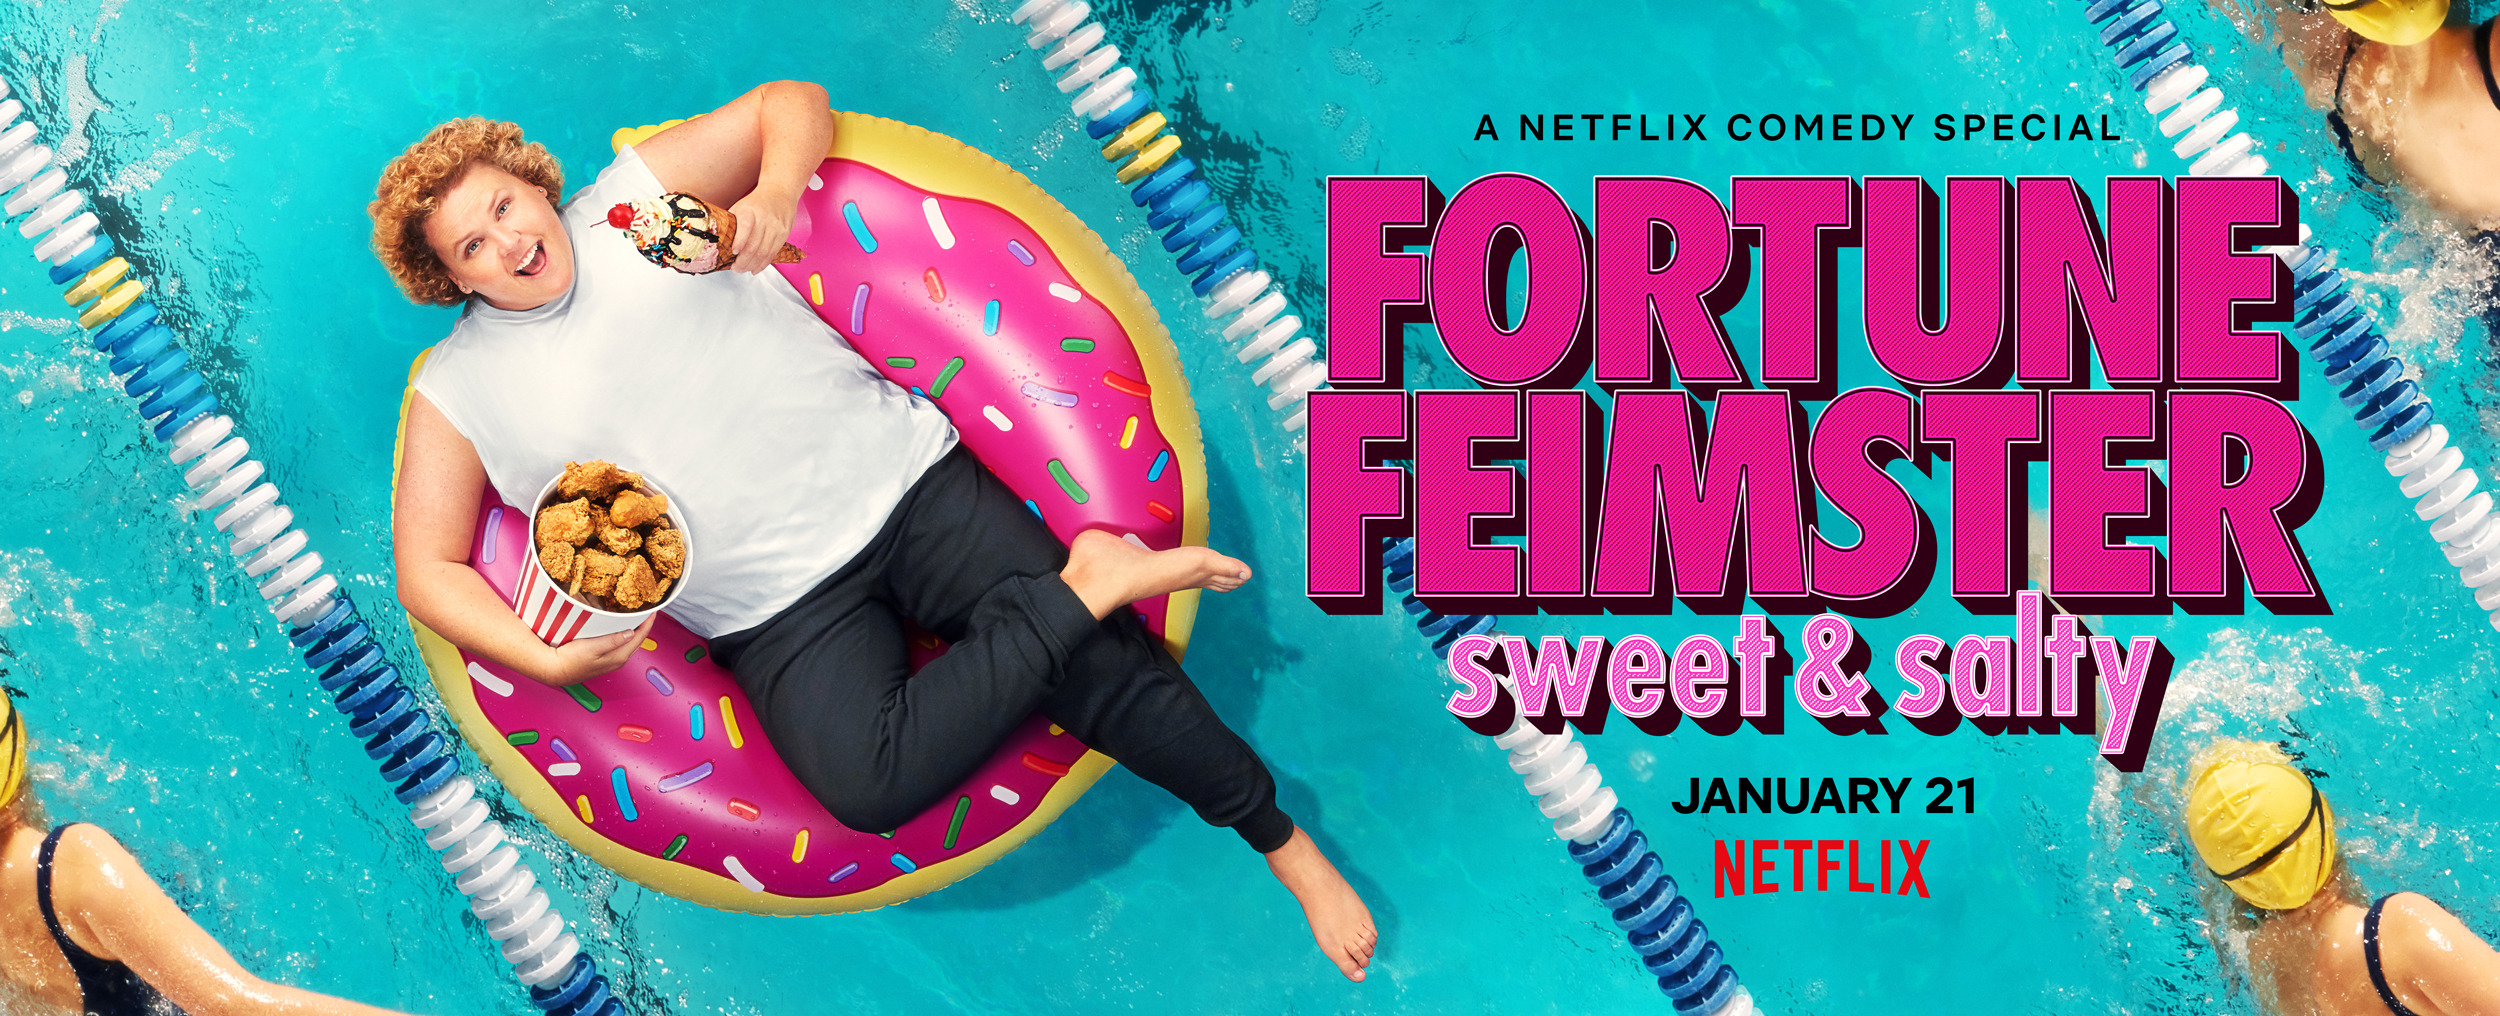 Mega Sized TV Poster Image for Fortune Feimster: Sweet & Salty 